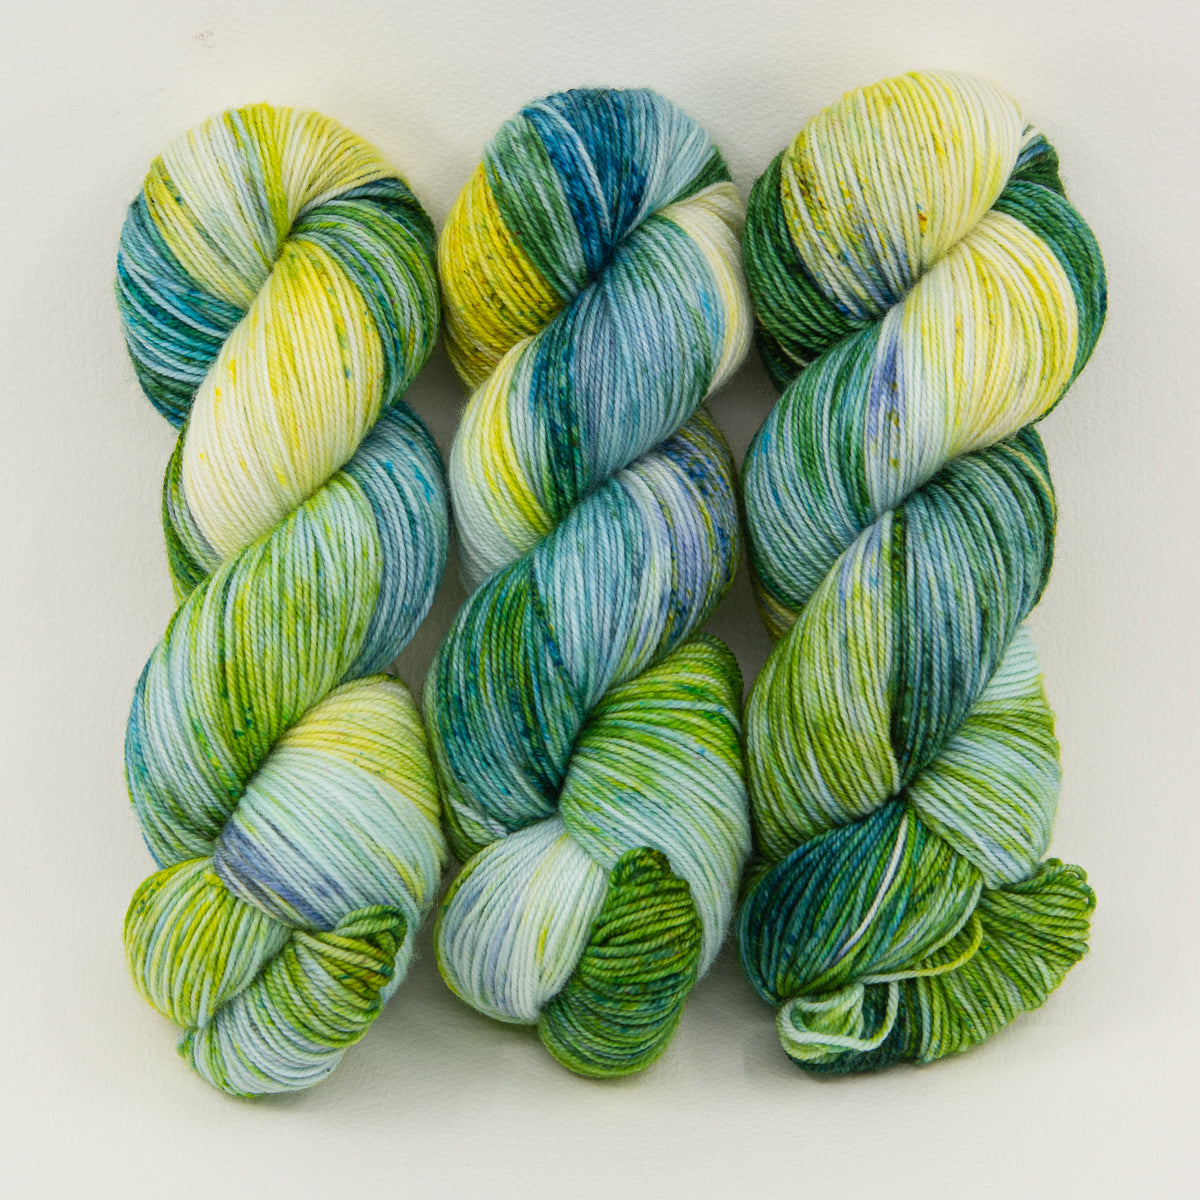 Green Wheat Fields - Van Gogh - Nettle Soft DK - Dyed Stock